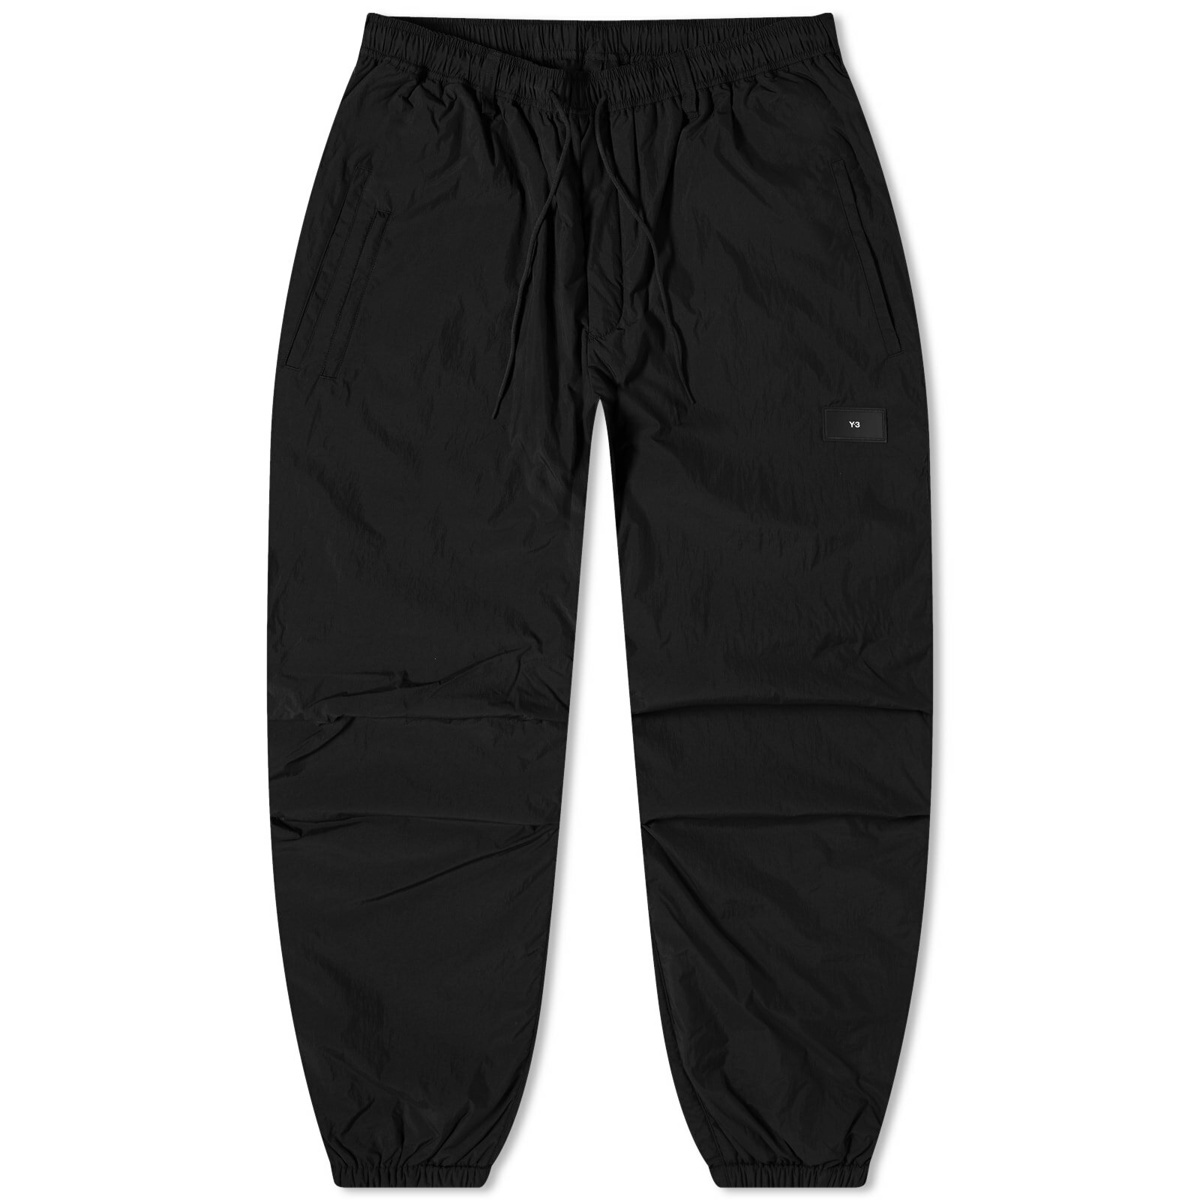 Y-3 Men's Padded Pants in Black Y-3